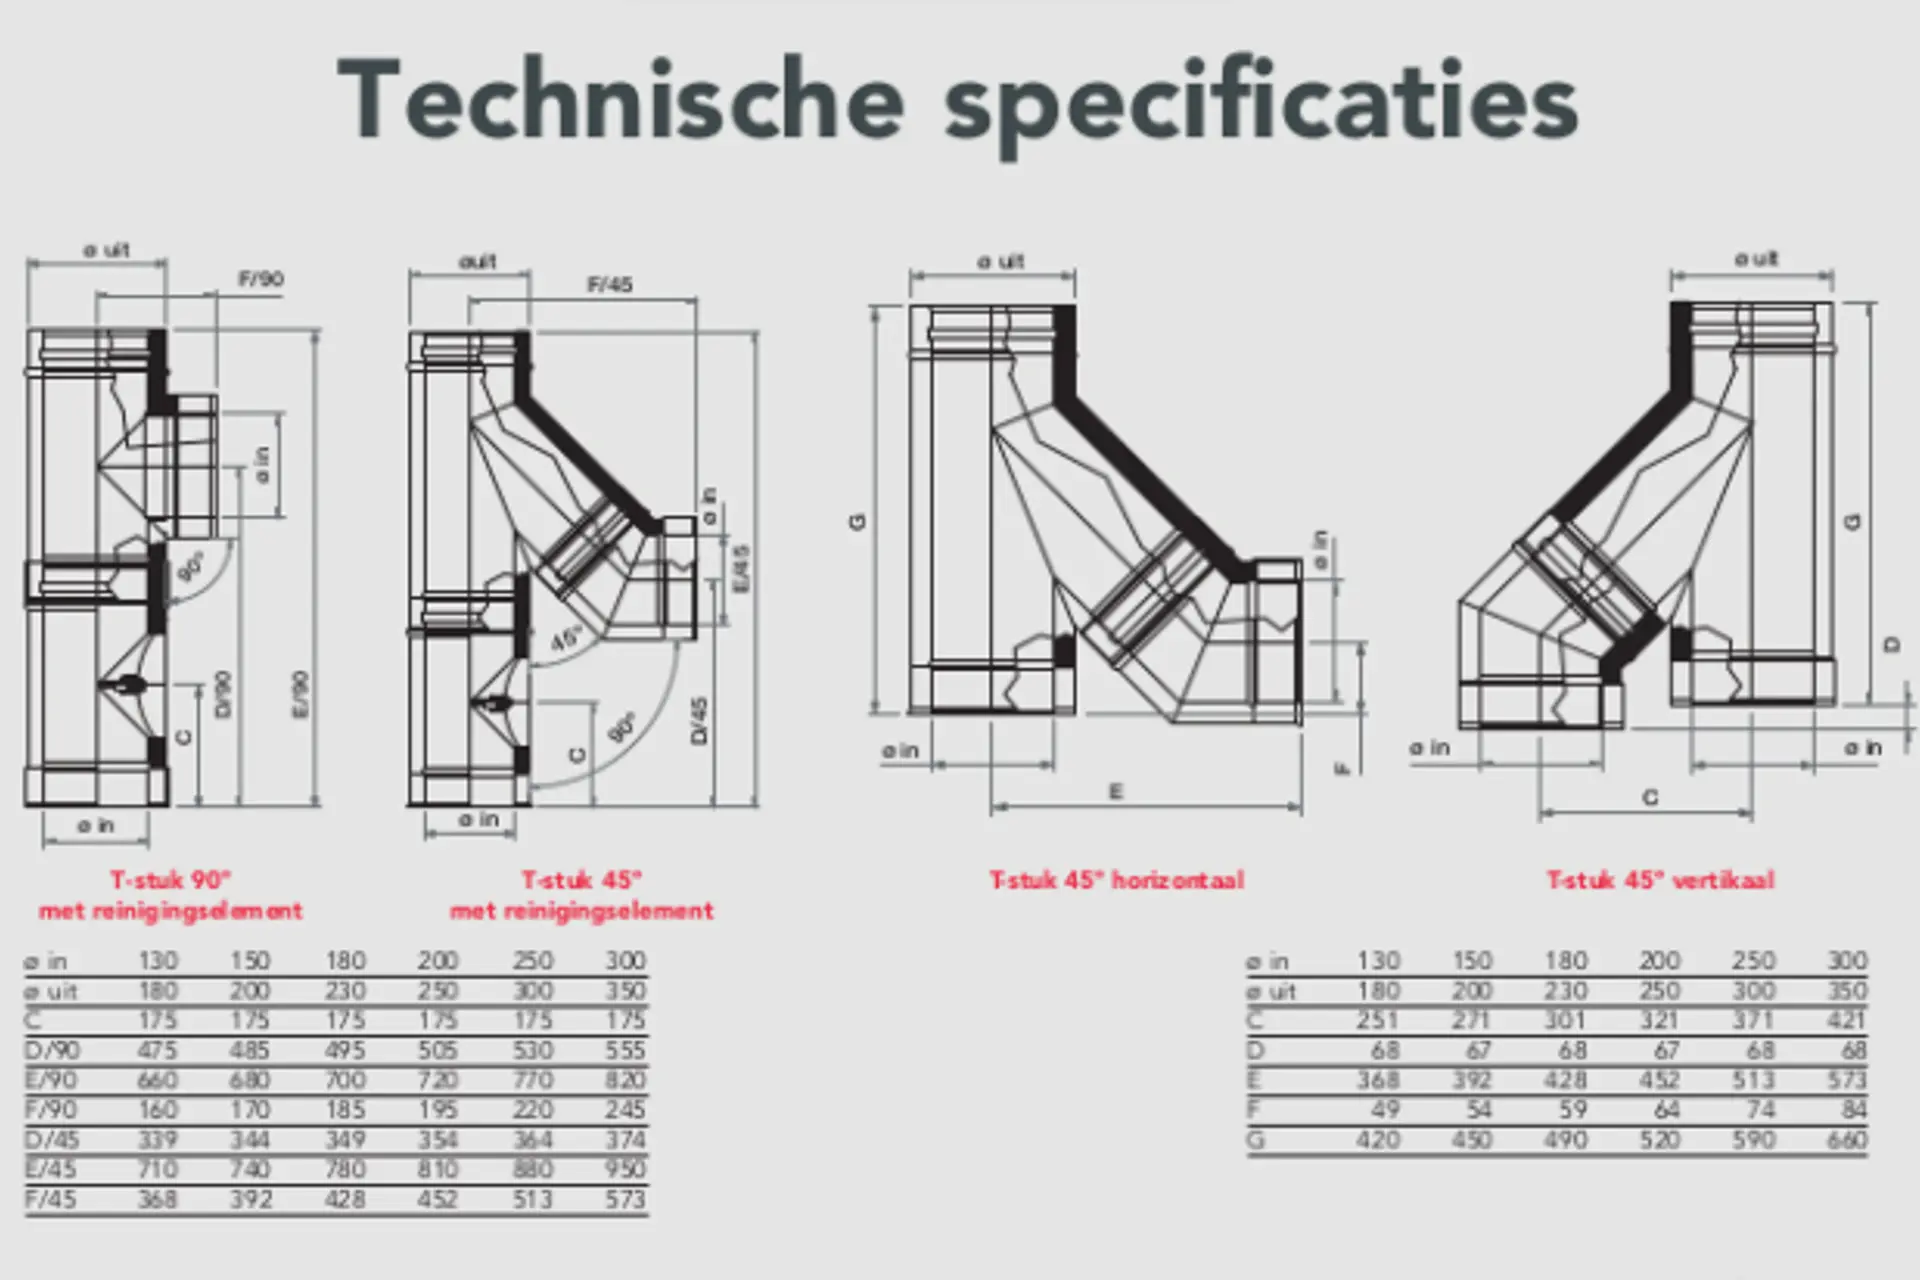 Technische Specificaties DHS Schoorsteenkanaal (1)